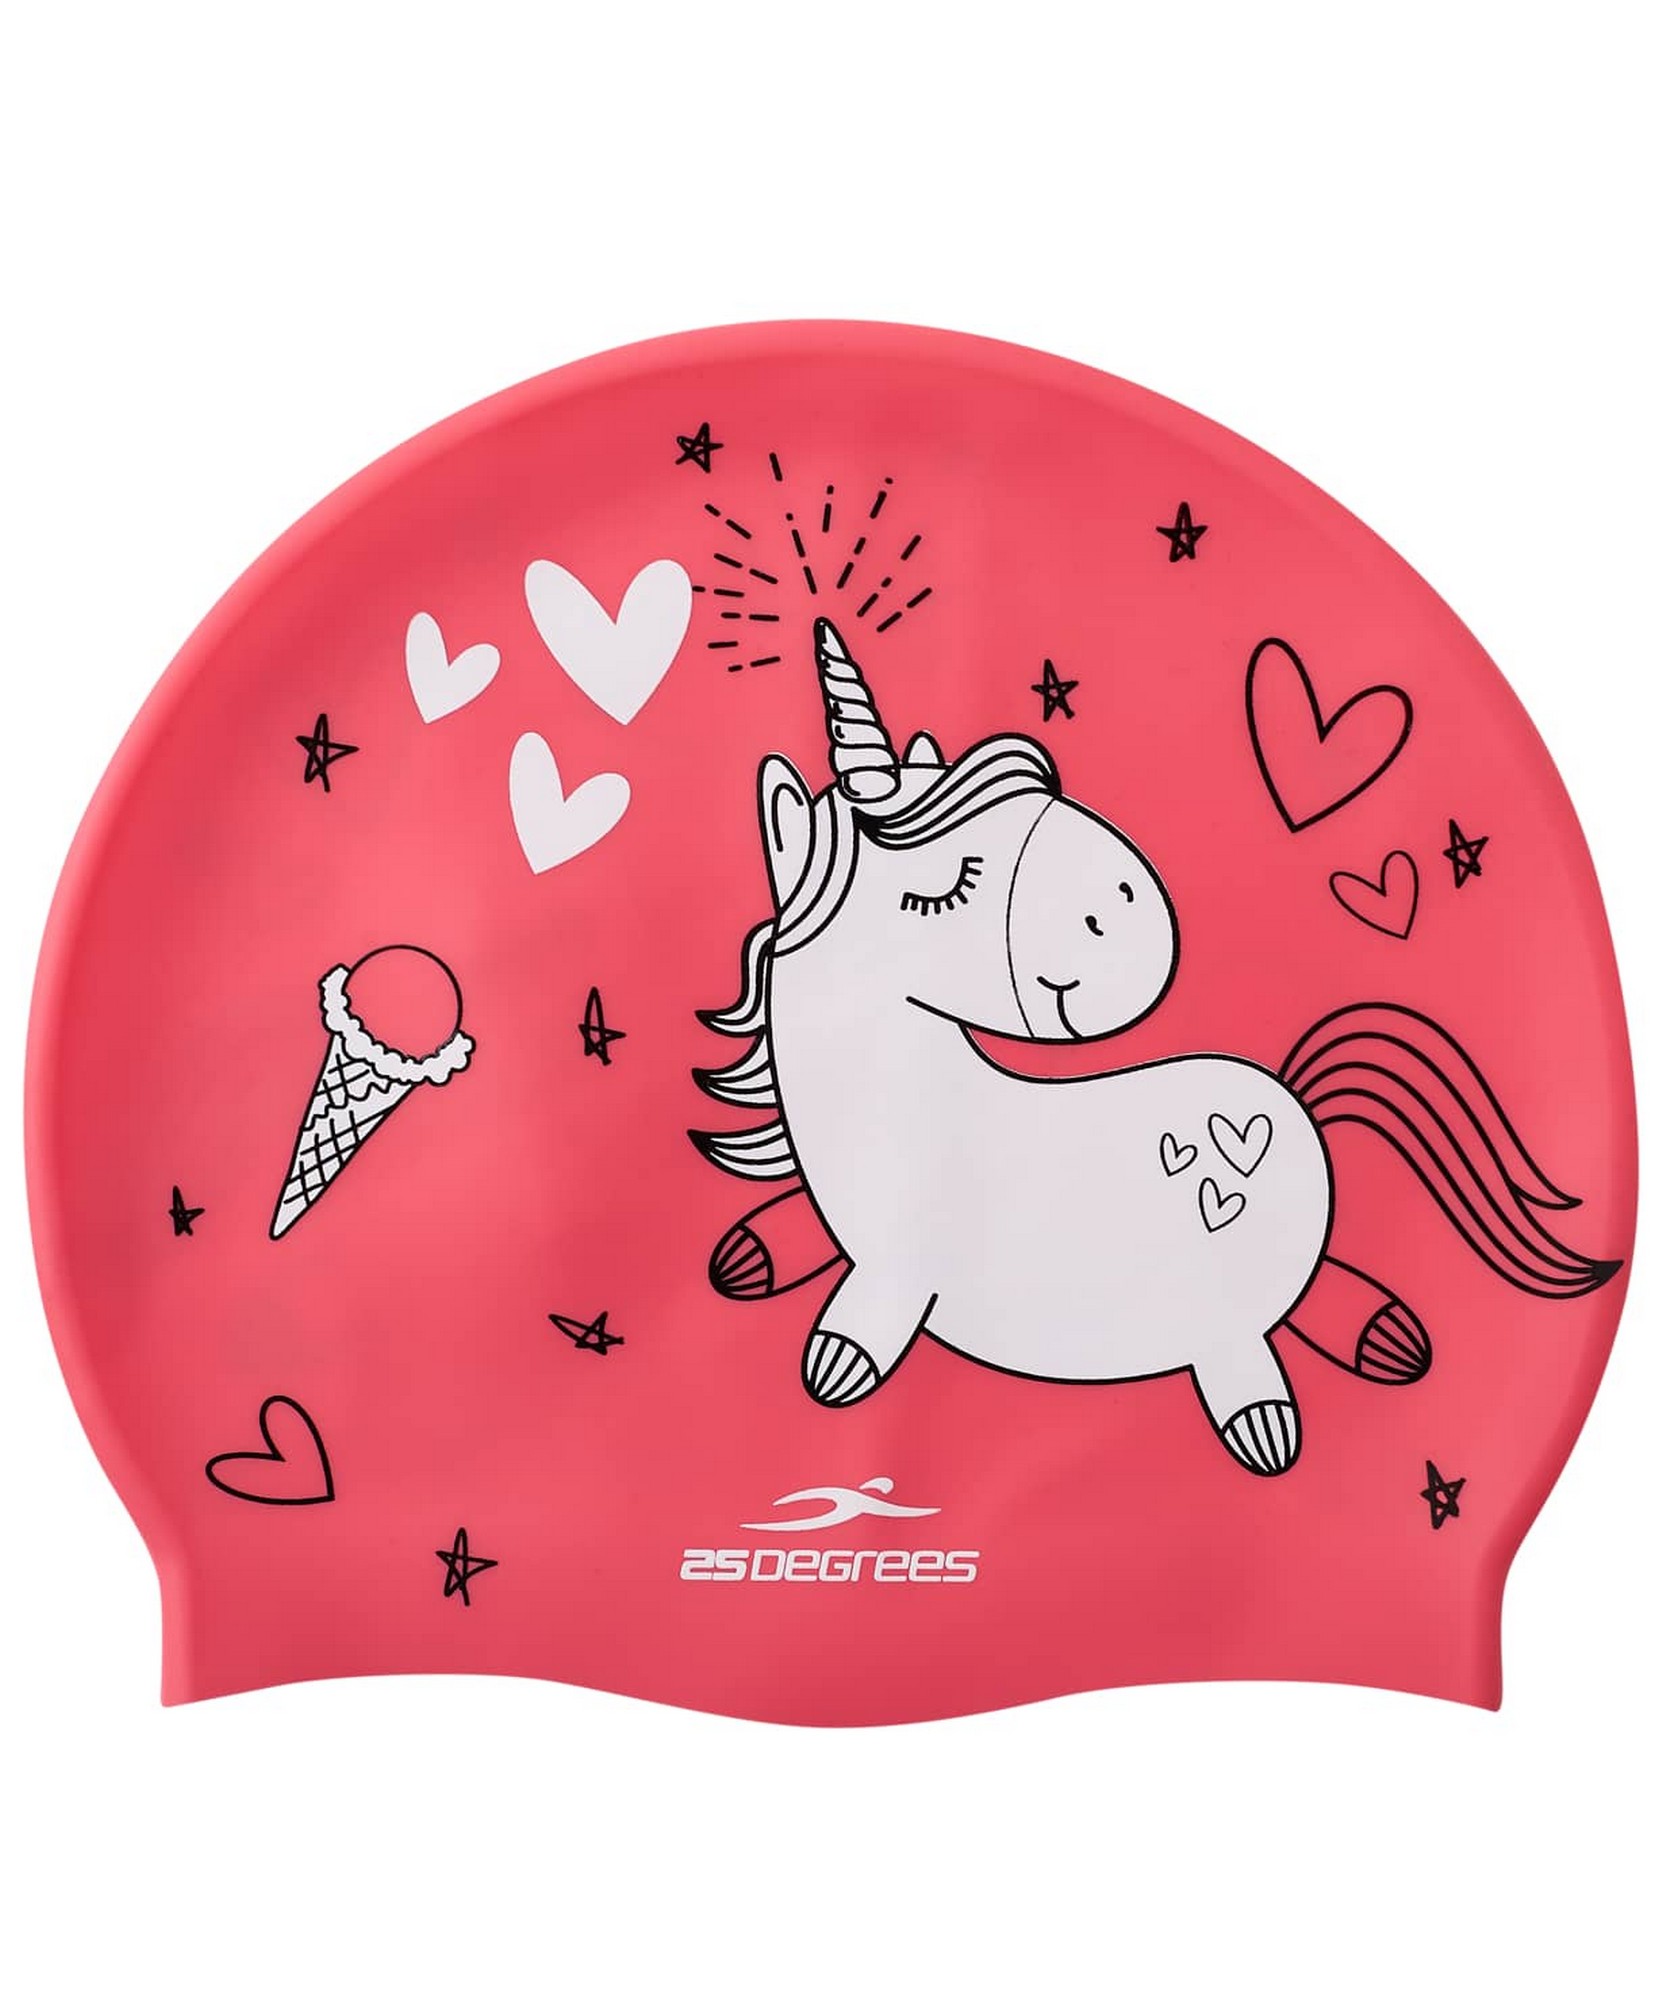 фото Шапочка для плавания 25degrees pony pink, силикон, детский цб-00001721